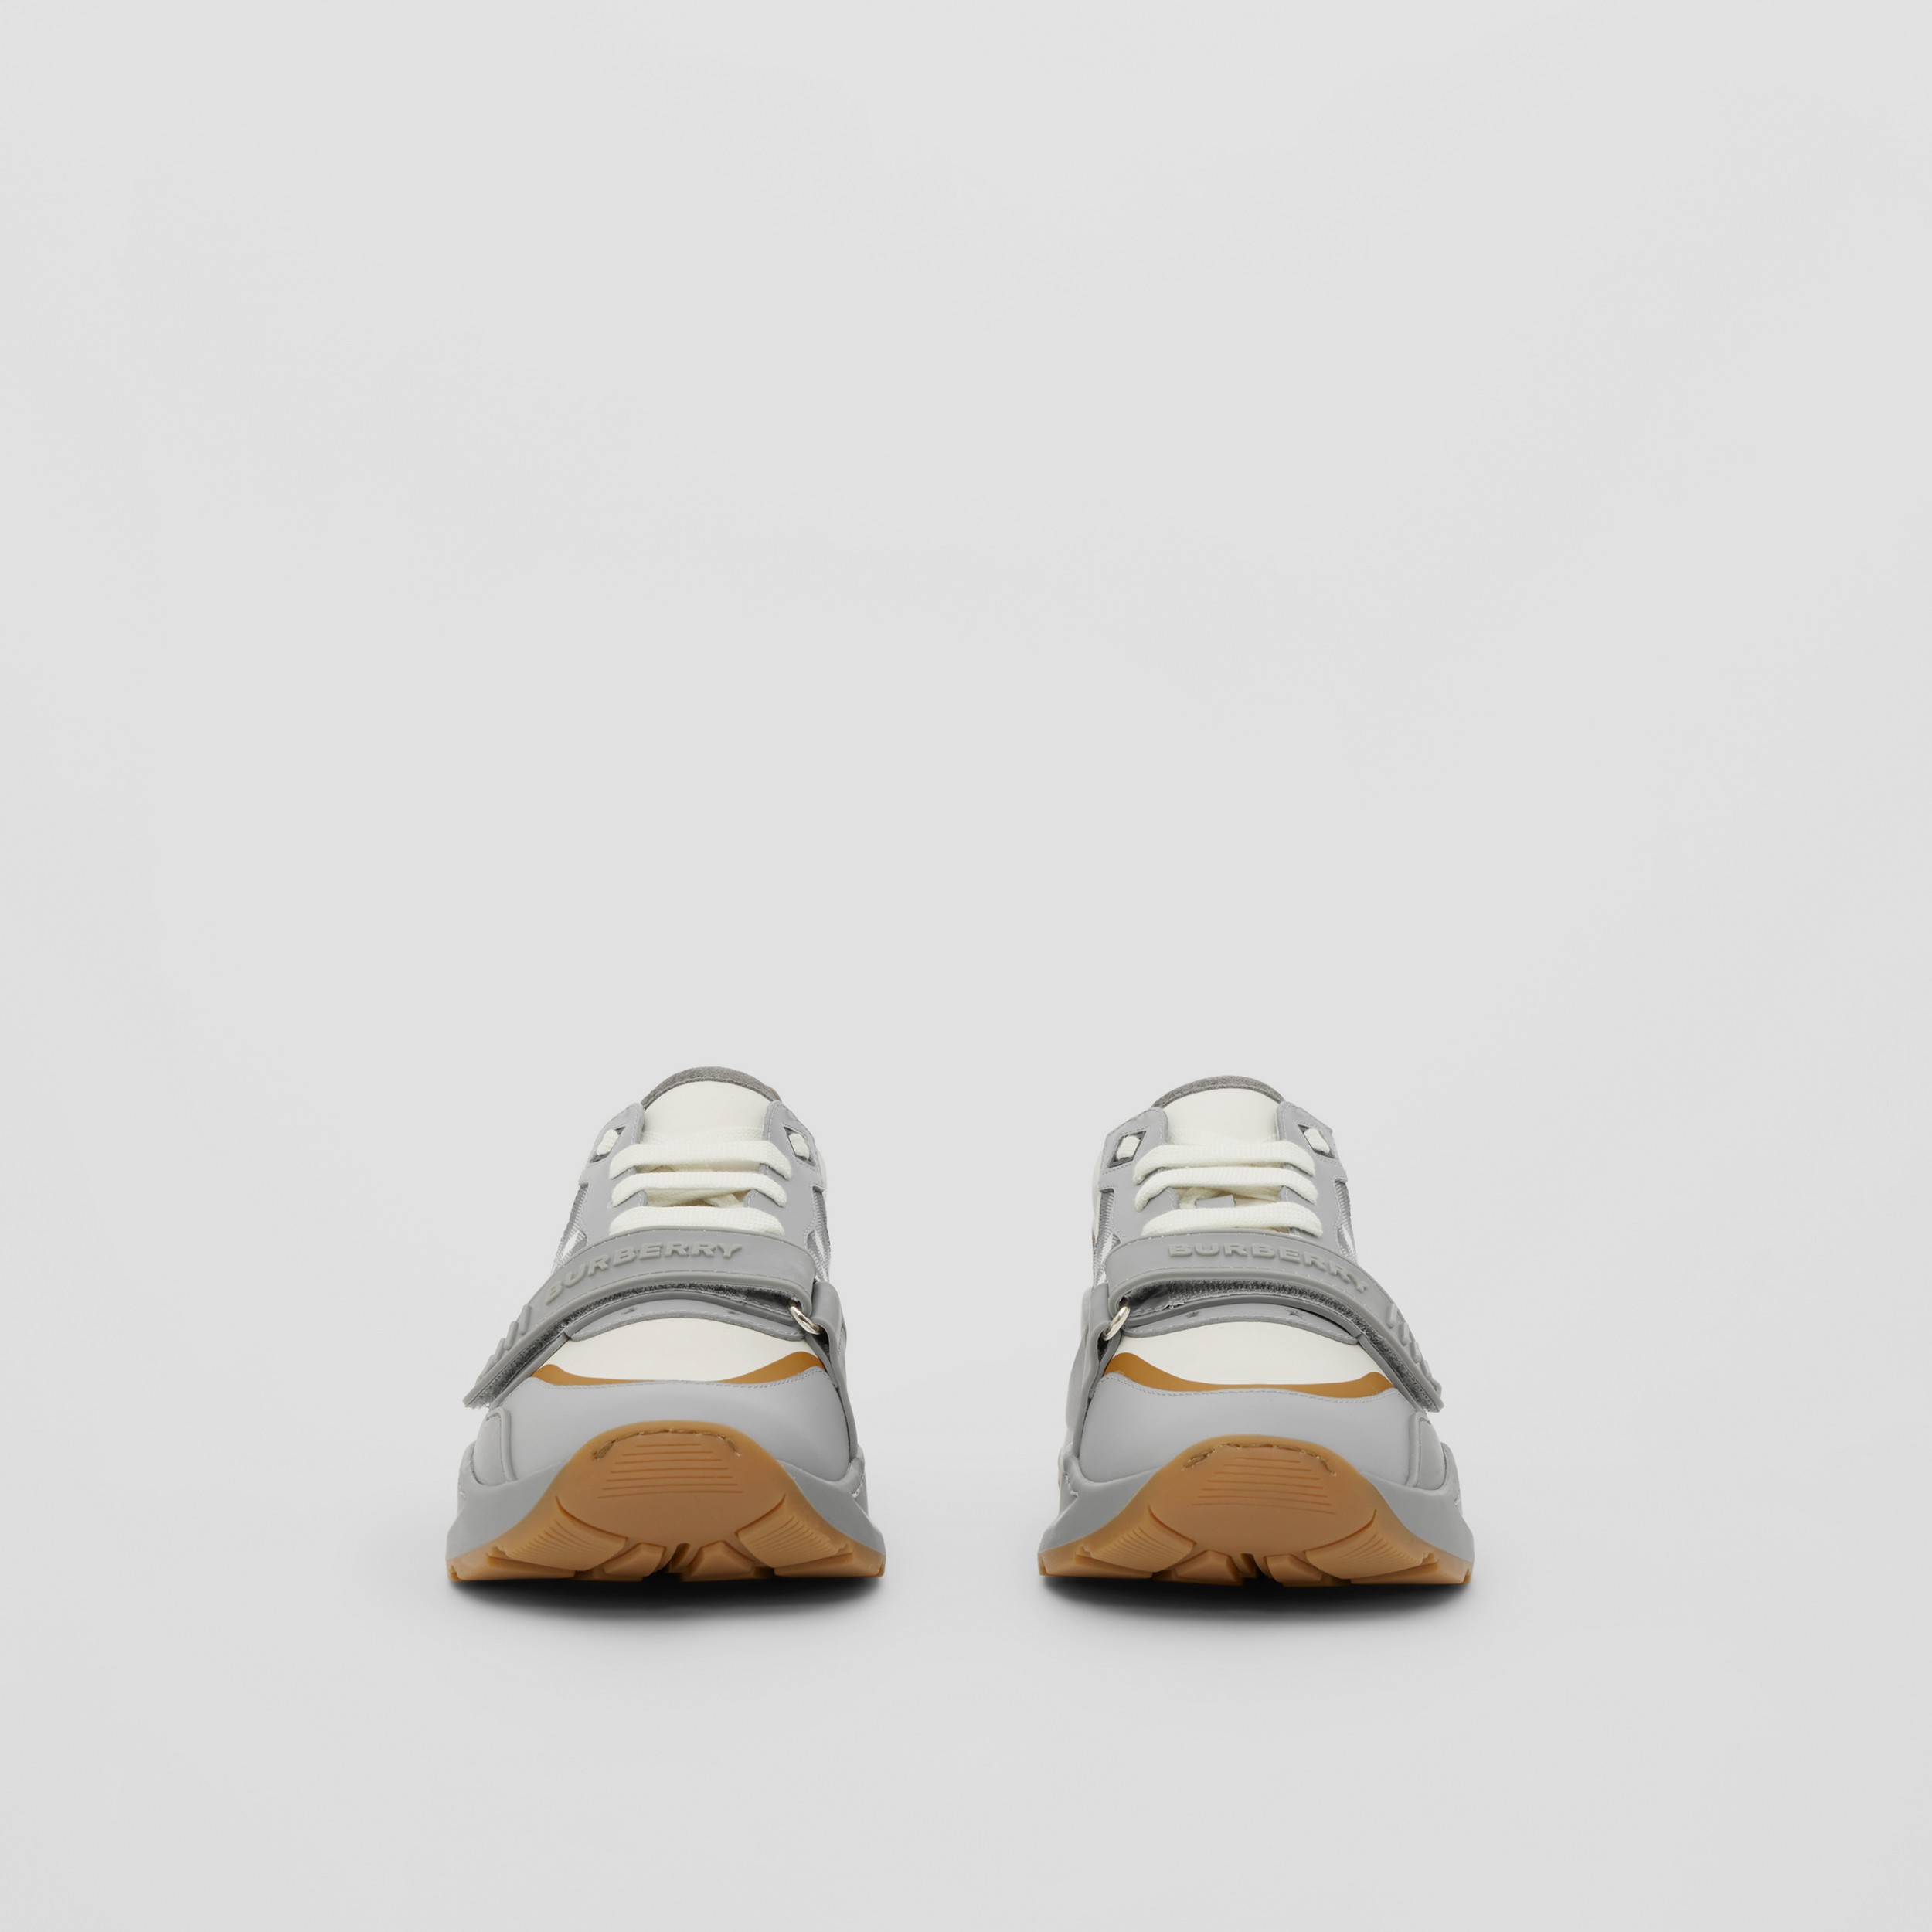 Sneakers en cuir velours, cuir et Check (Gris/camel) - Femme | Site officiel Burberry® - 4